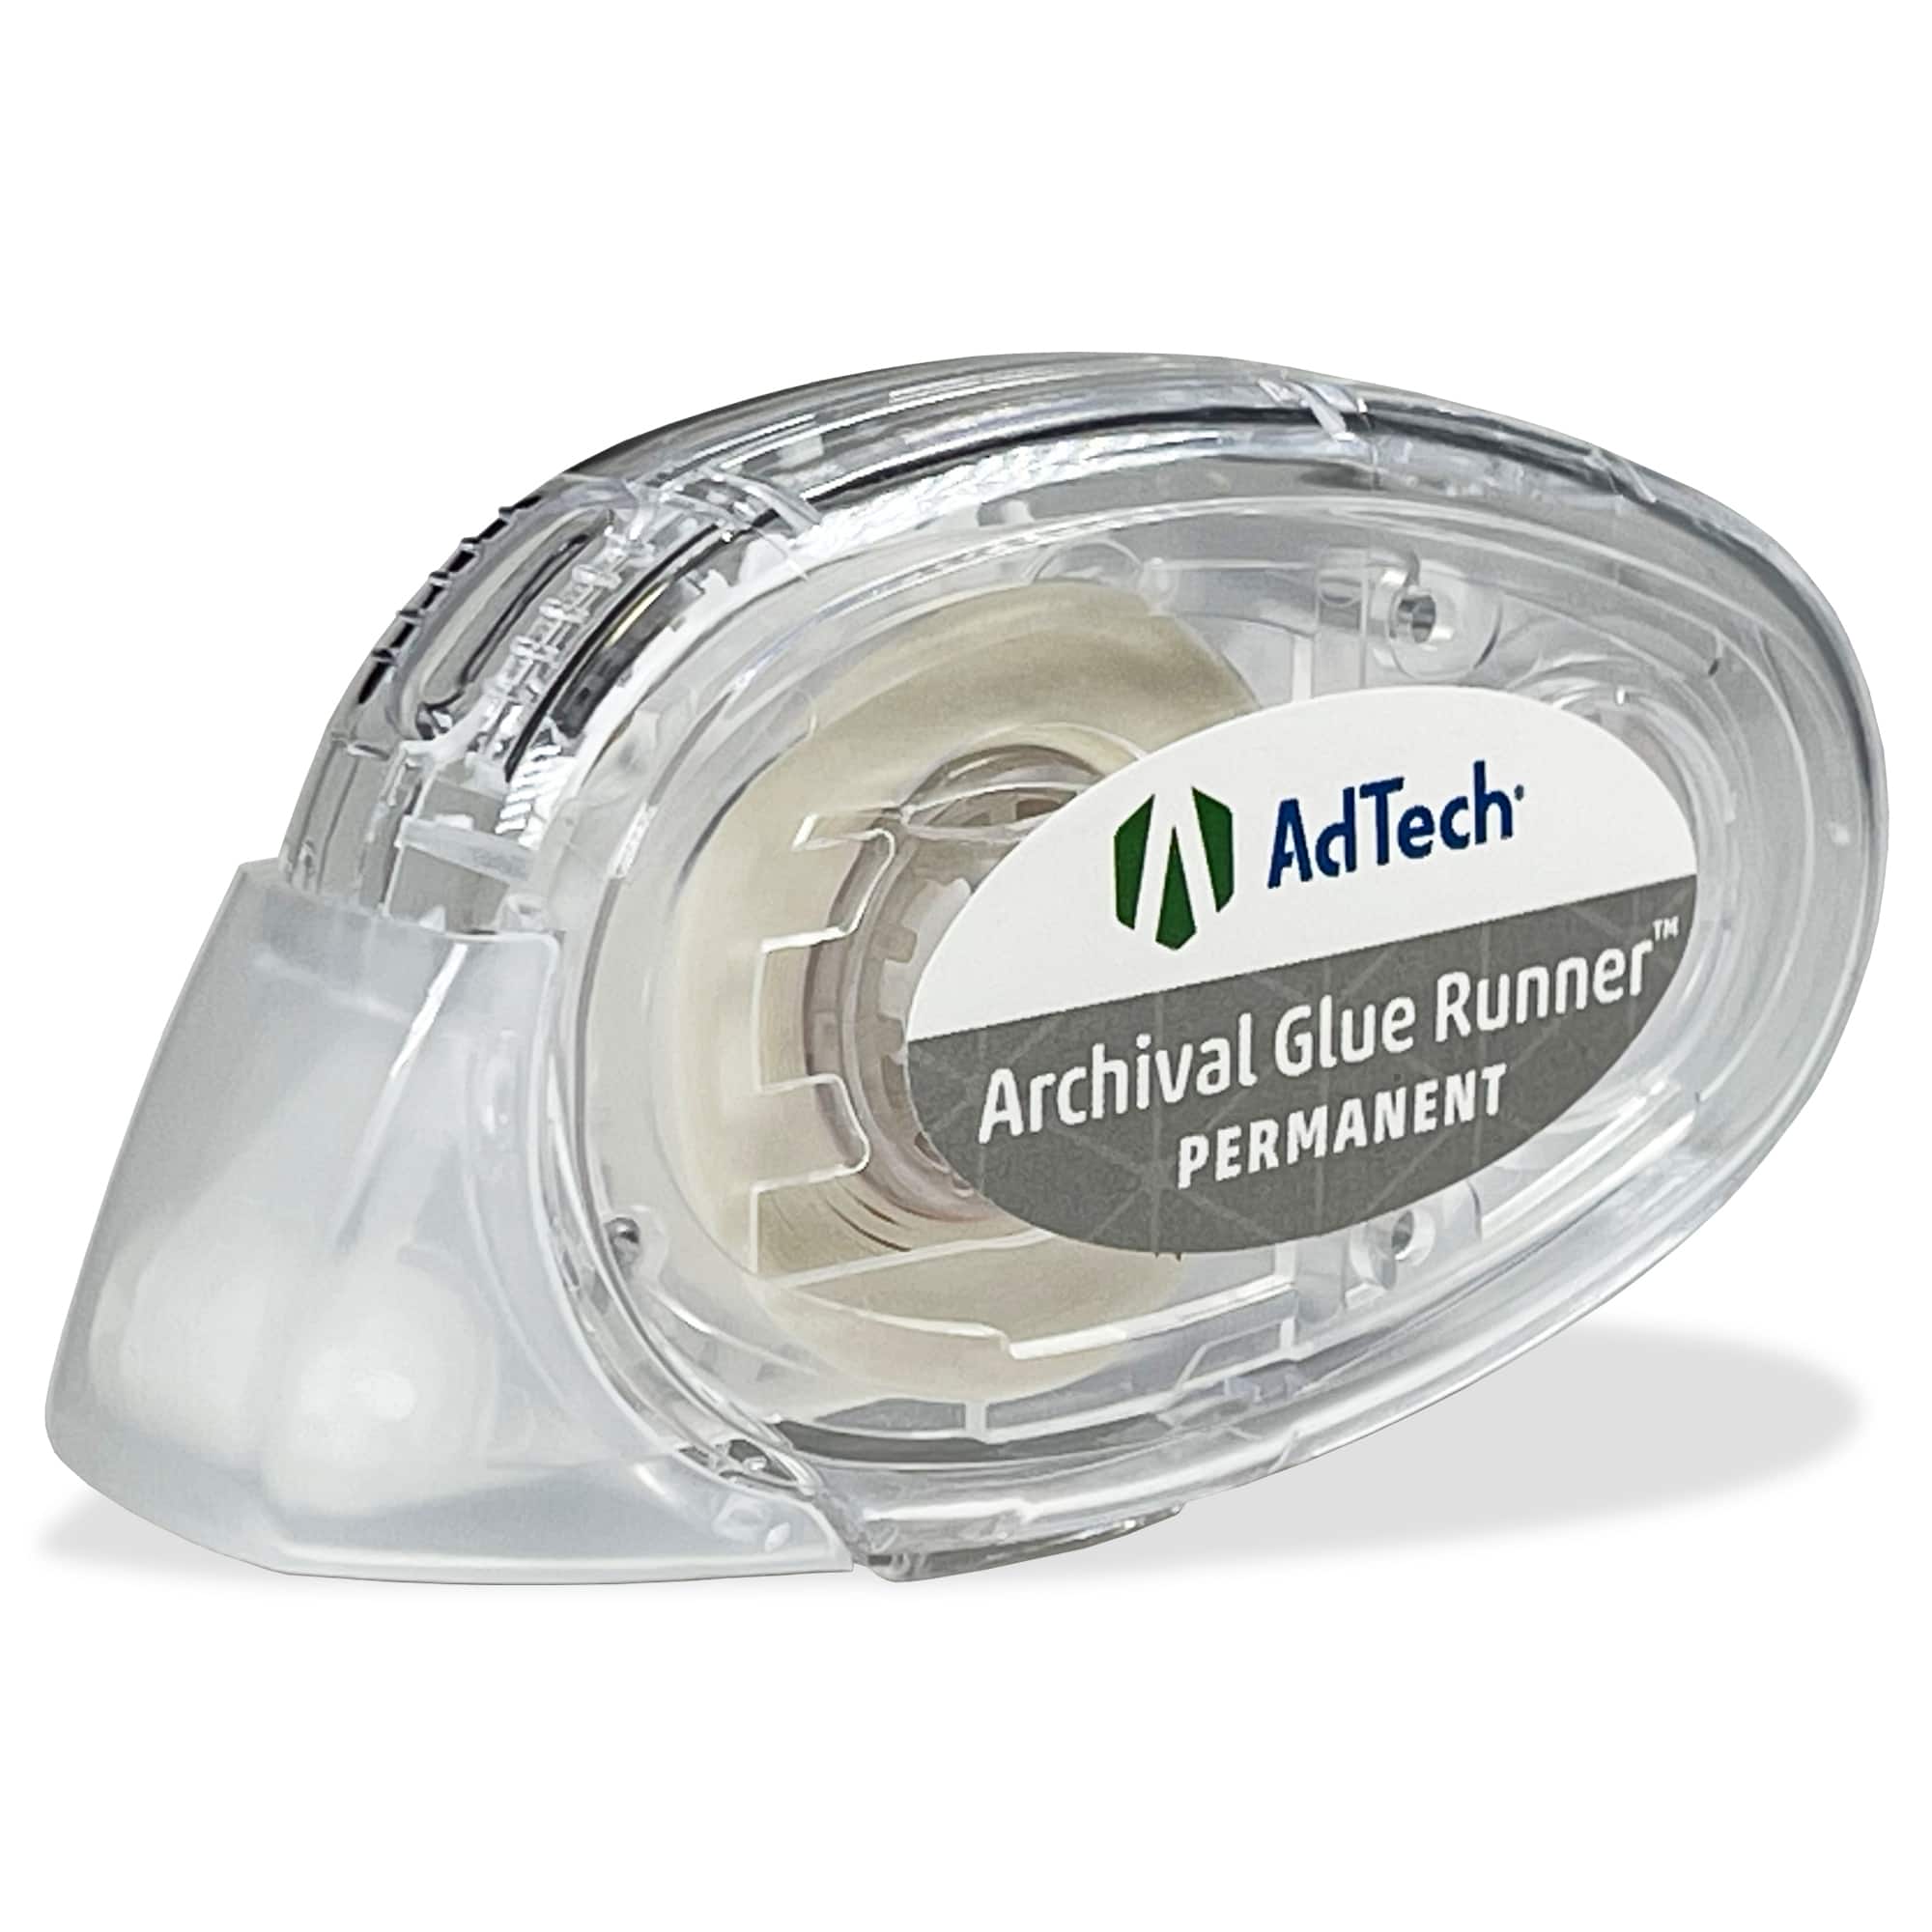 AdTech® Permanent Micro Dot Glue Runner™, 4ct., Michaels